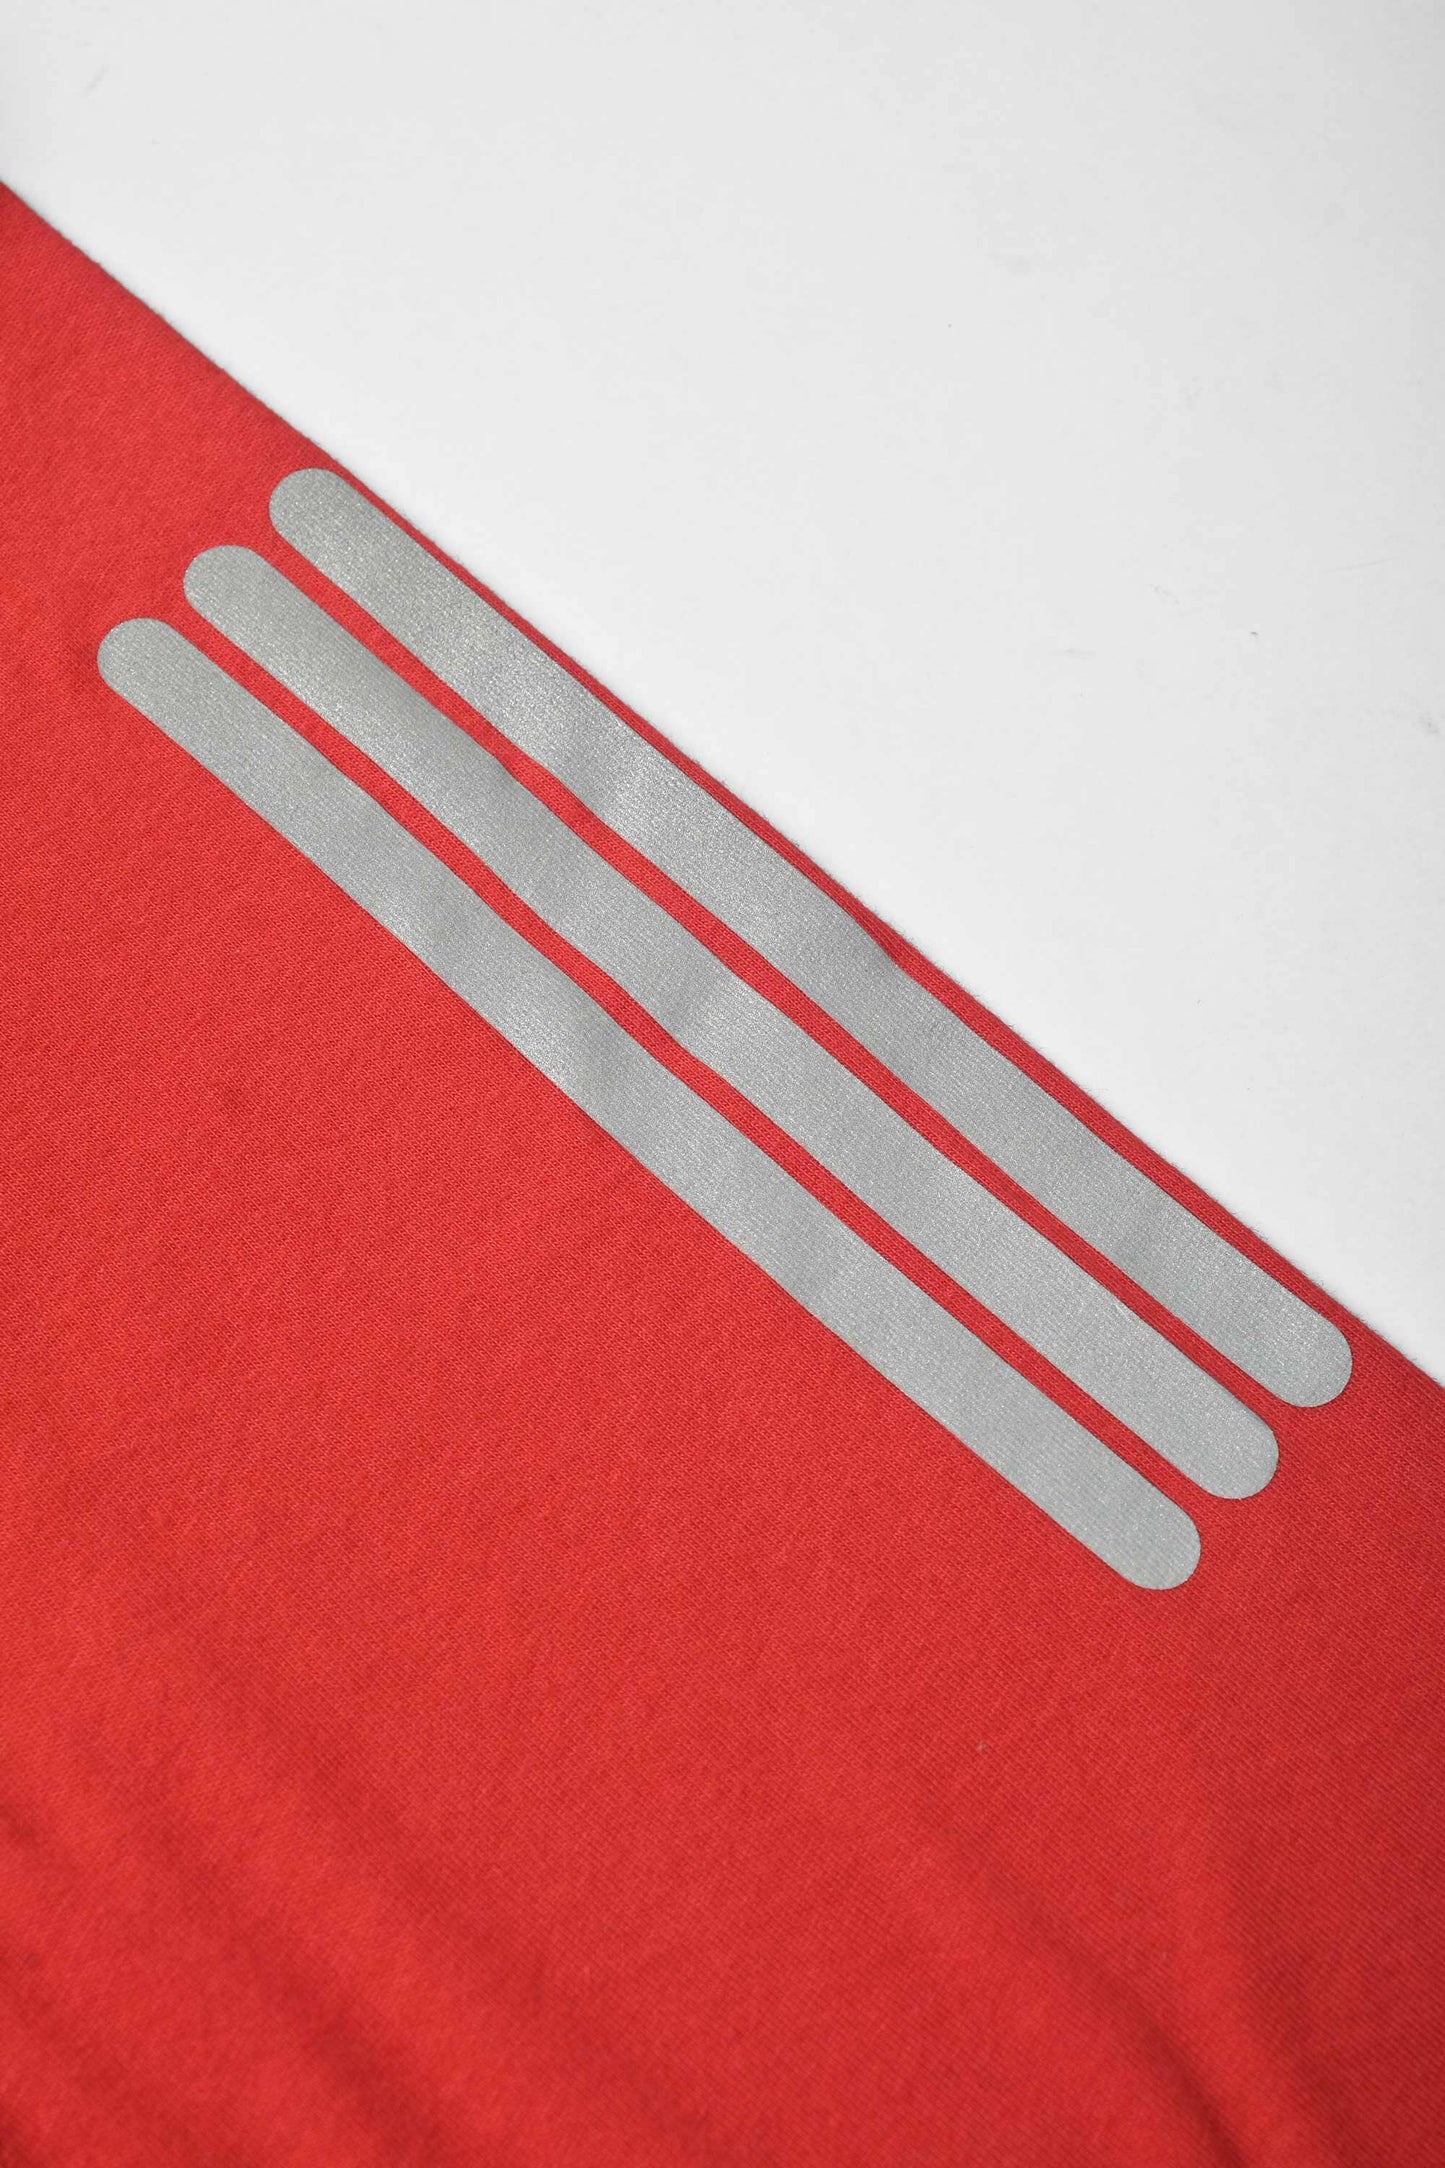 Polo Athletica Women's V-Neck Logo Reflector Short Sleeve Tee Shirt